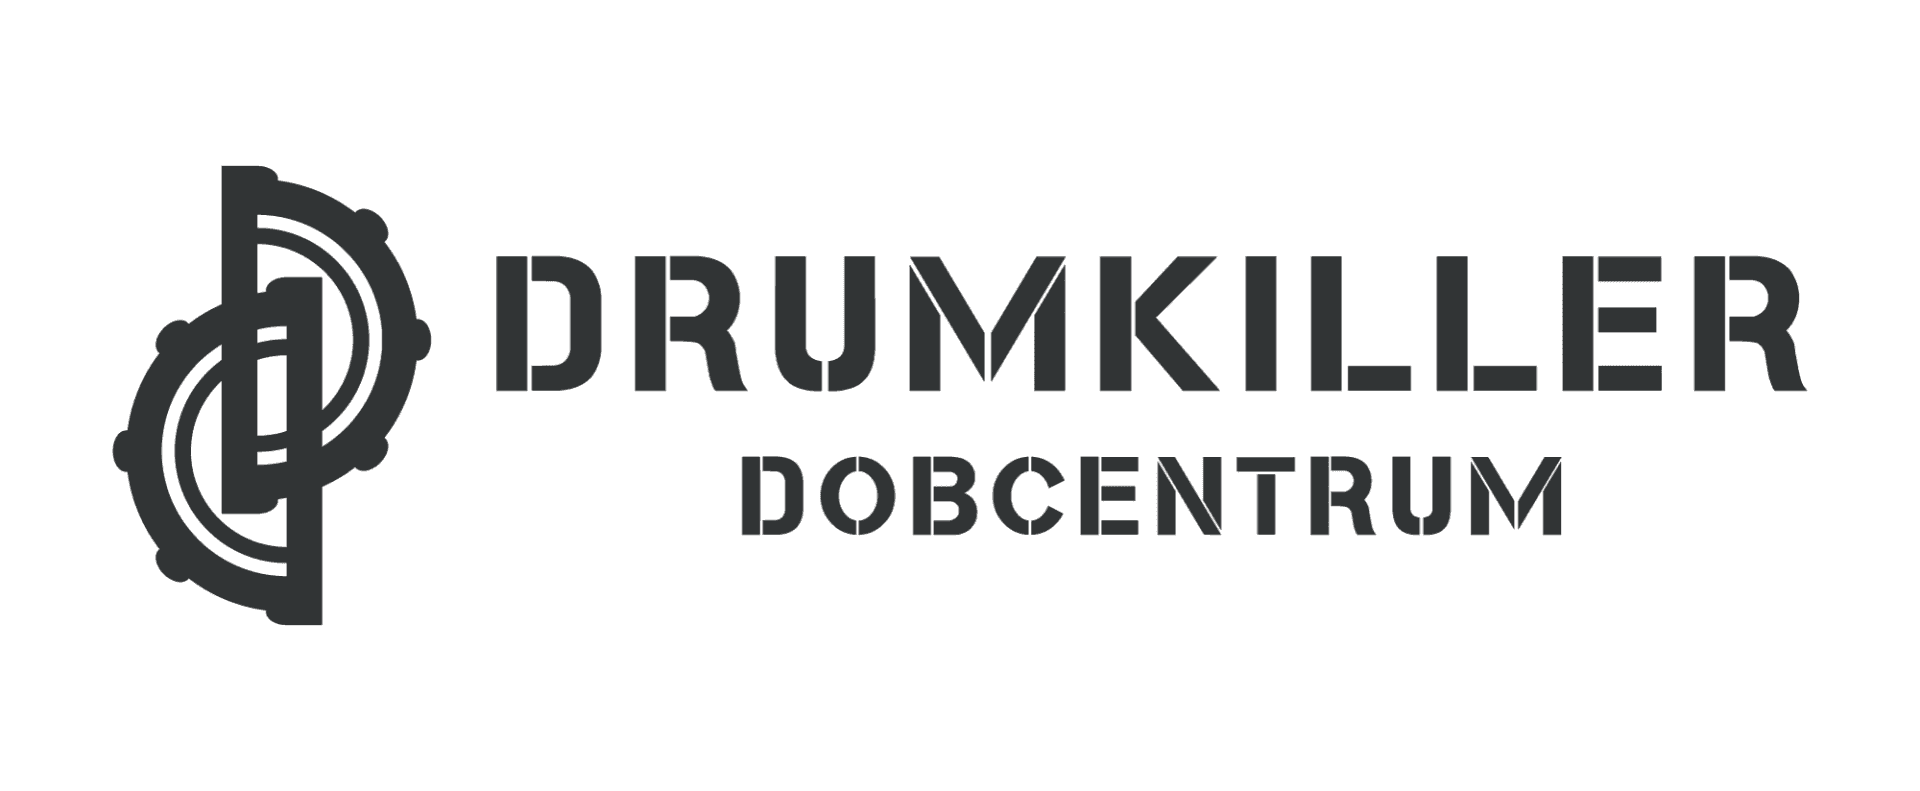 drumkiller dobcentrum ügyfél logó